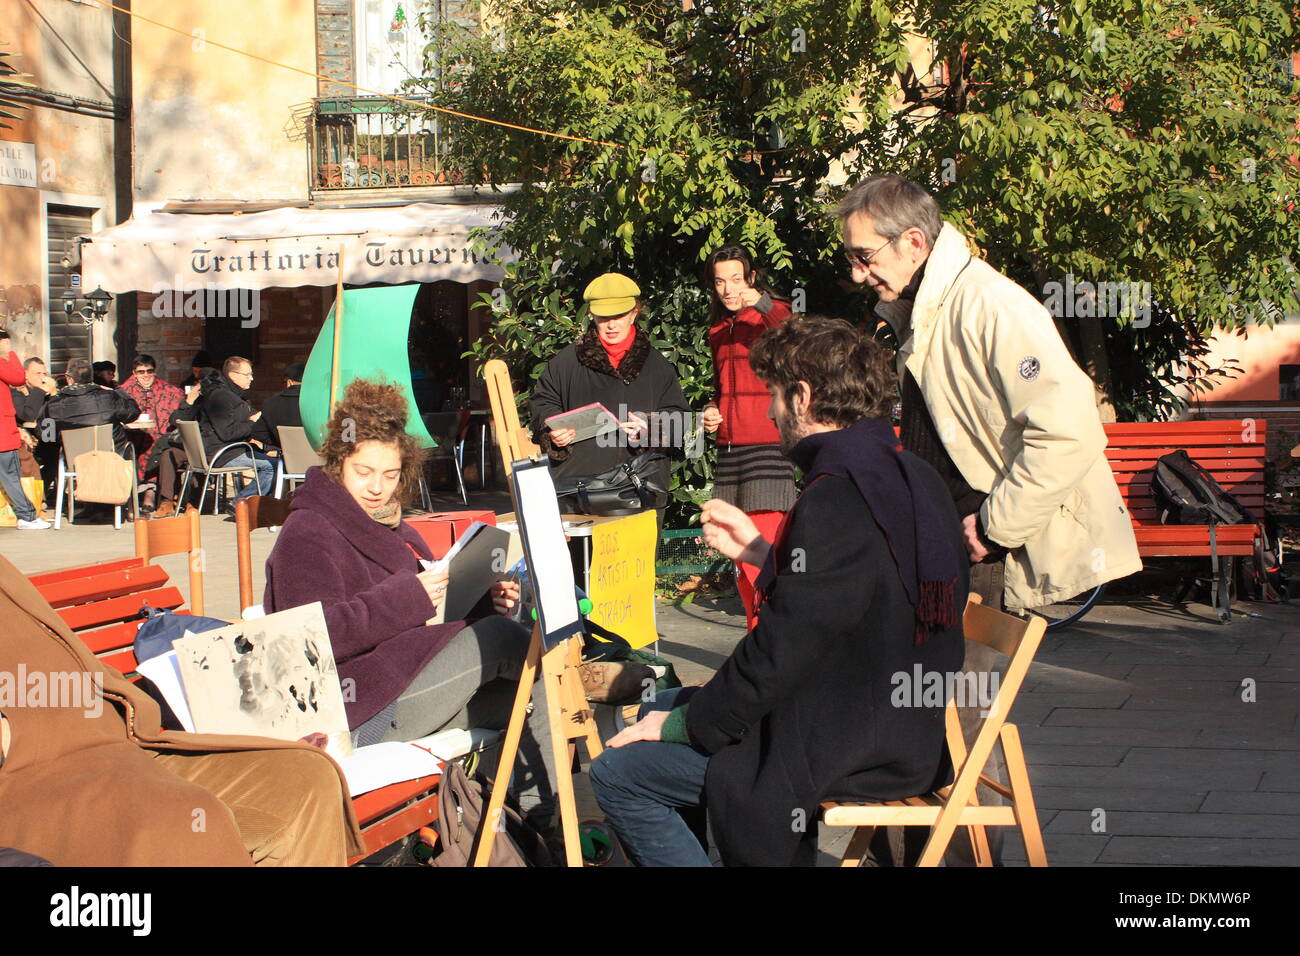 Venedig, Italien. 7. Dezember 2013. "S.O.S. Artisti di Strada!" gegen die sehr restriktive Streetart-Regelungen von Venedig zu protestieren. Stockfoto